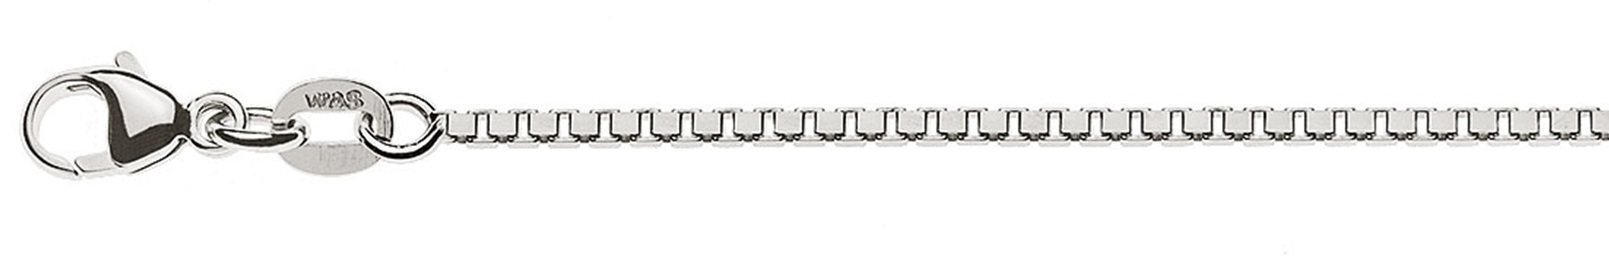 AURONOS Prestige Halskette Weissgold 18K Venezianerkette diamantiert 42cm 1.4mm